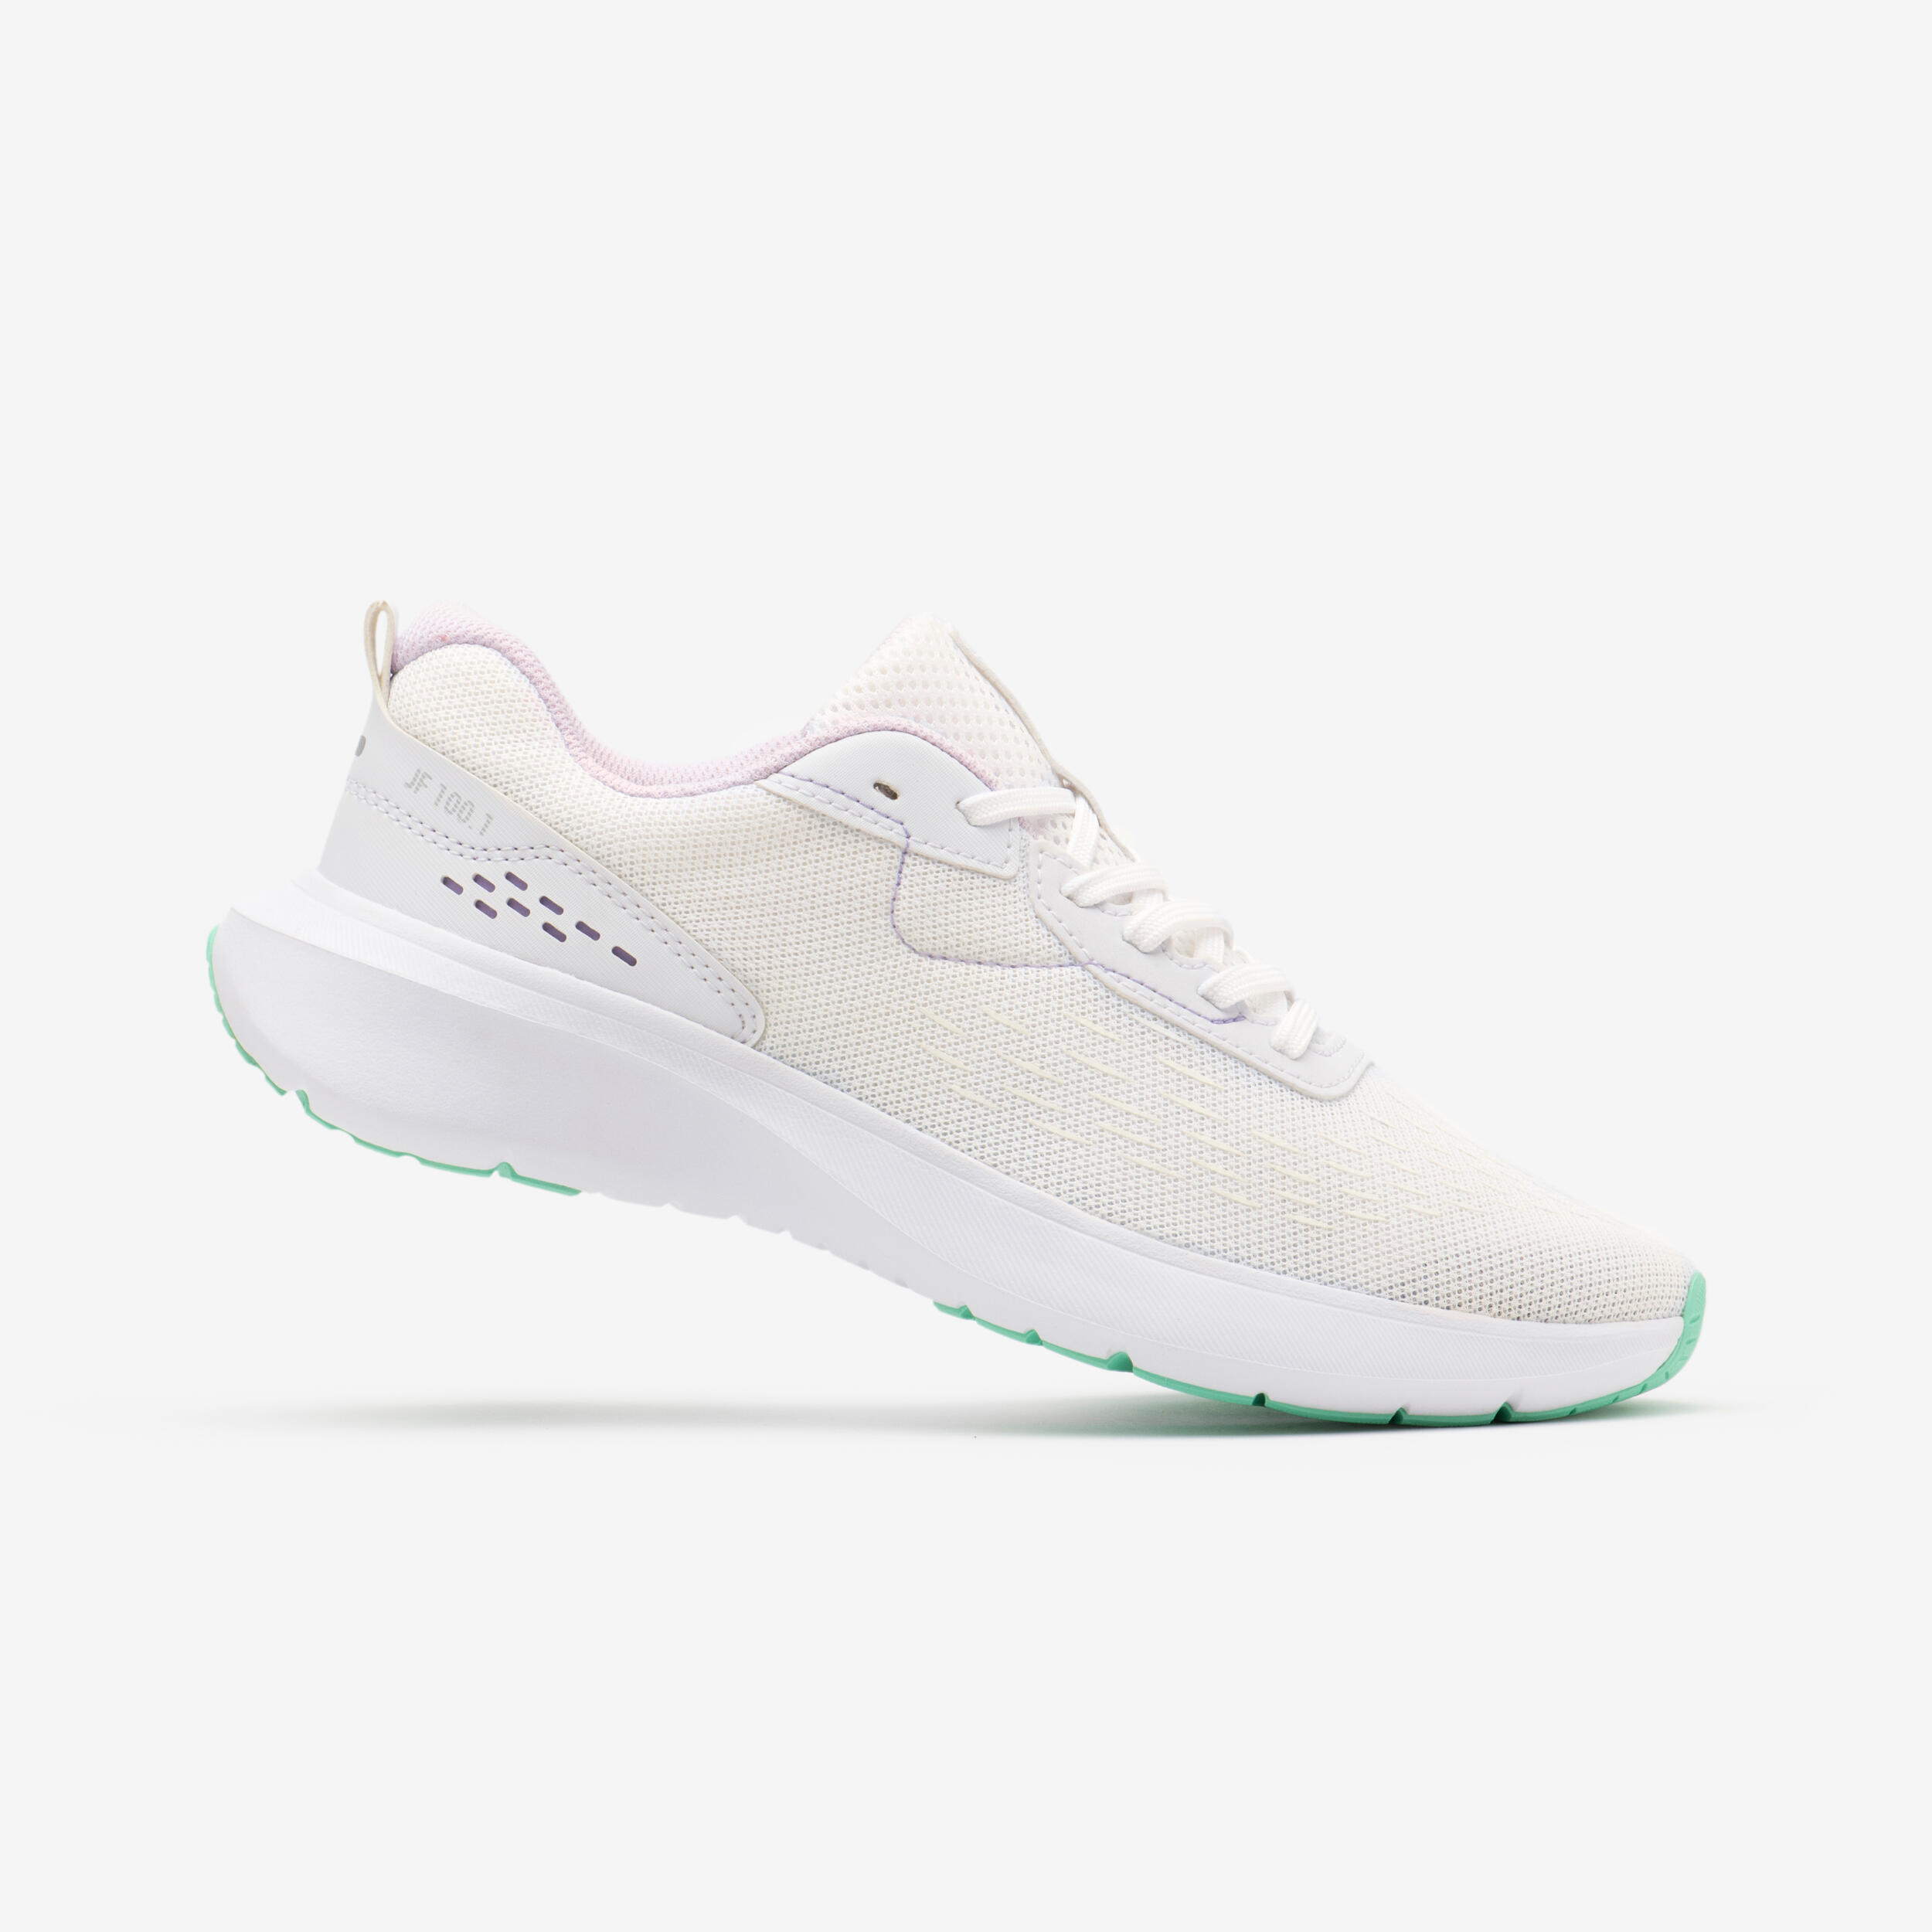 KALENJI Chaussures De Running Femme Jogflow 100.1 Blanc Vert -